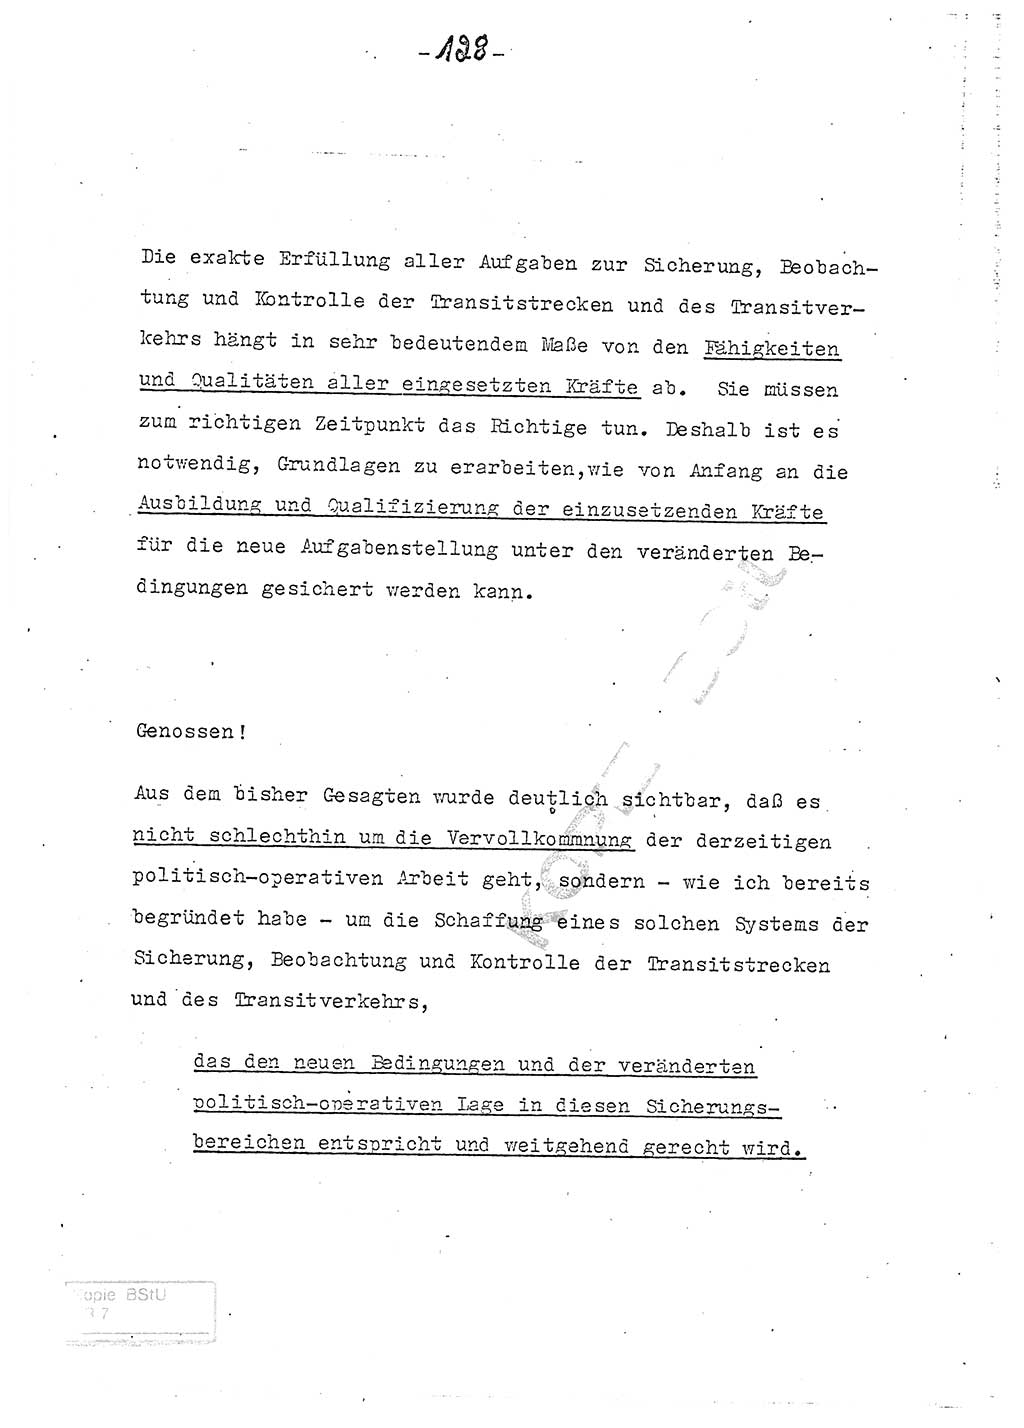 Referat (Entwurf) des Genossen Minister (Generaloberst Erich Mielke) auf der Dienstkonferenz 1972, Ministerium für Staatssicherheit (MfS) [Deutsche Demokratische Republik (DDR)], Der Minister, Geheime Verschlußsache (GVS) 008-150/72, Berlin 25.2.1972, Seite 128 (Ref. Entw. DK MfS DDR Min. GVS 008-150/72 1972, S. 128)